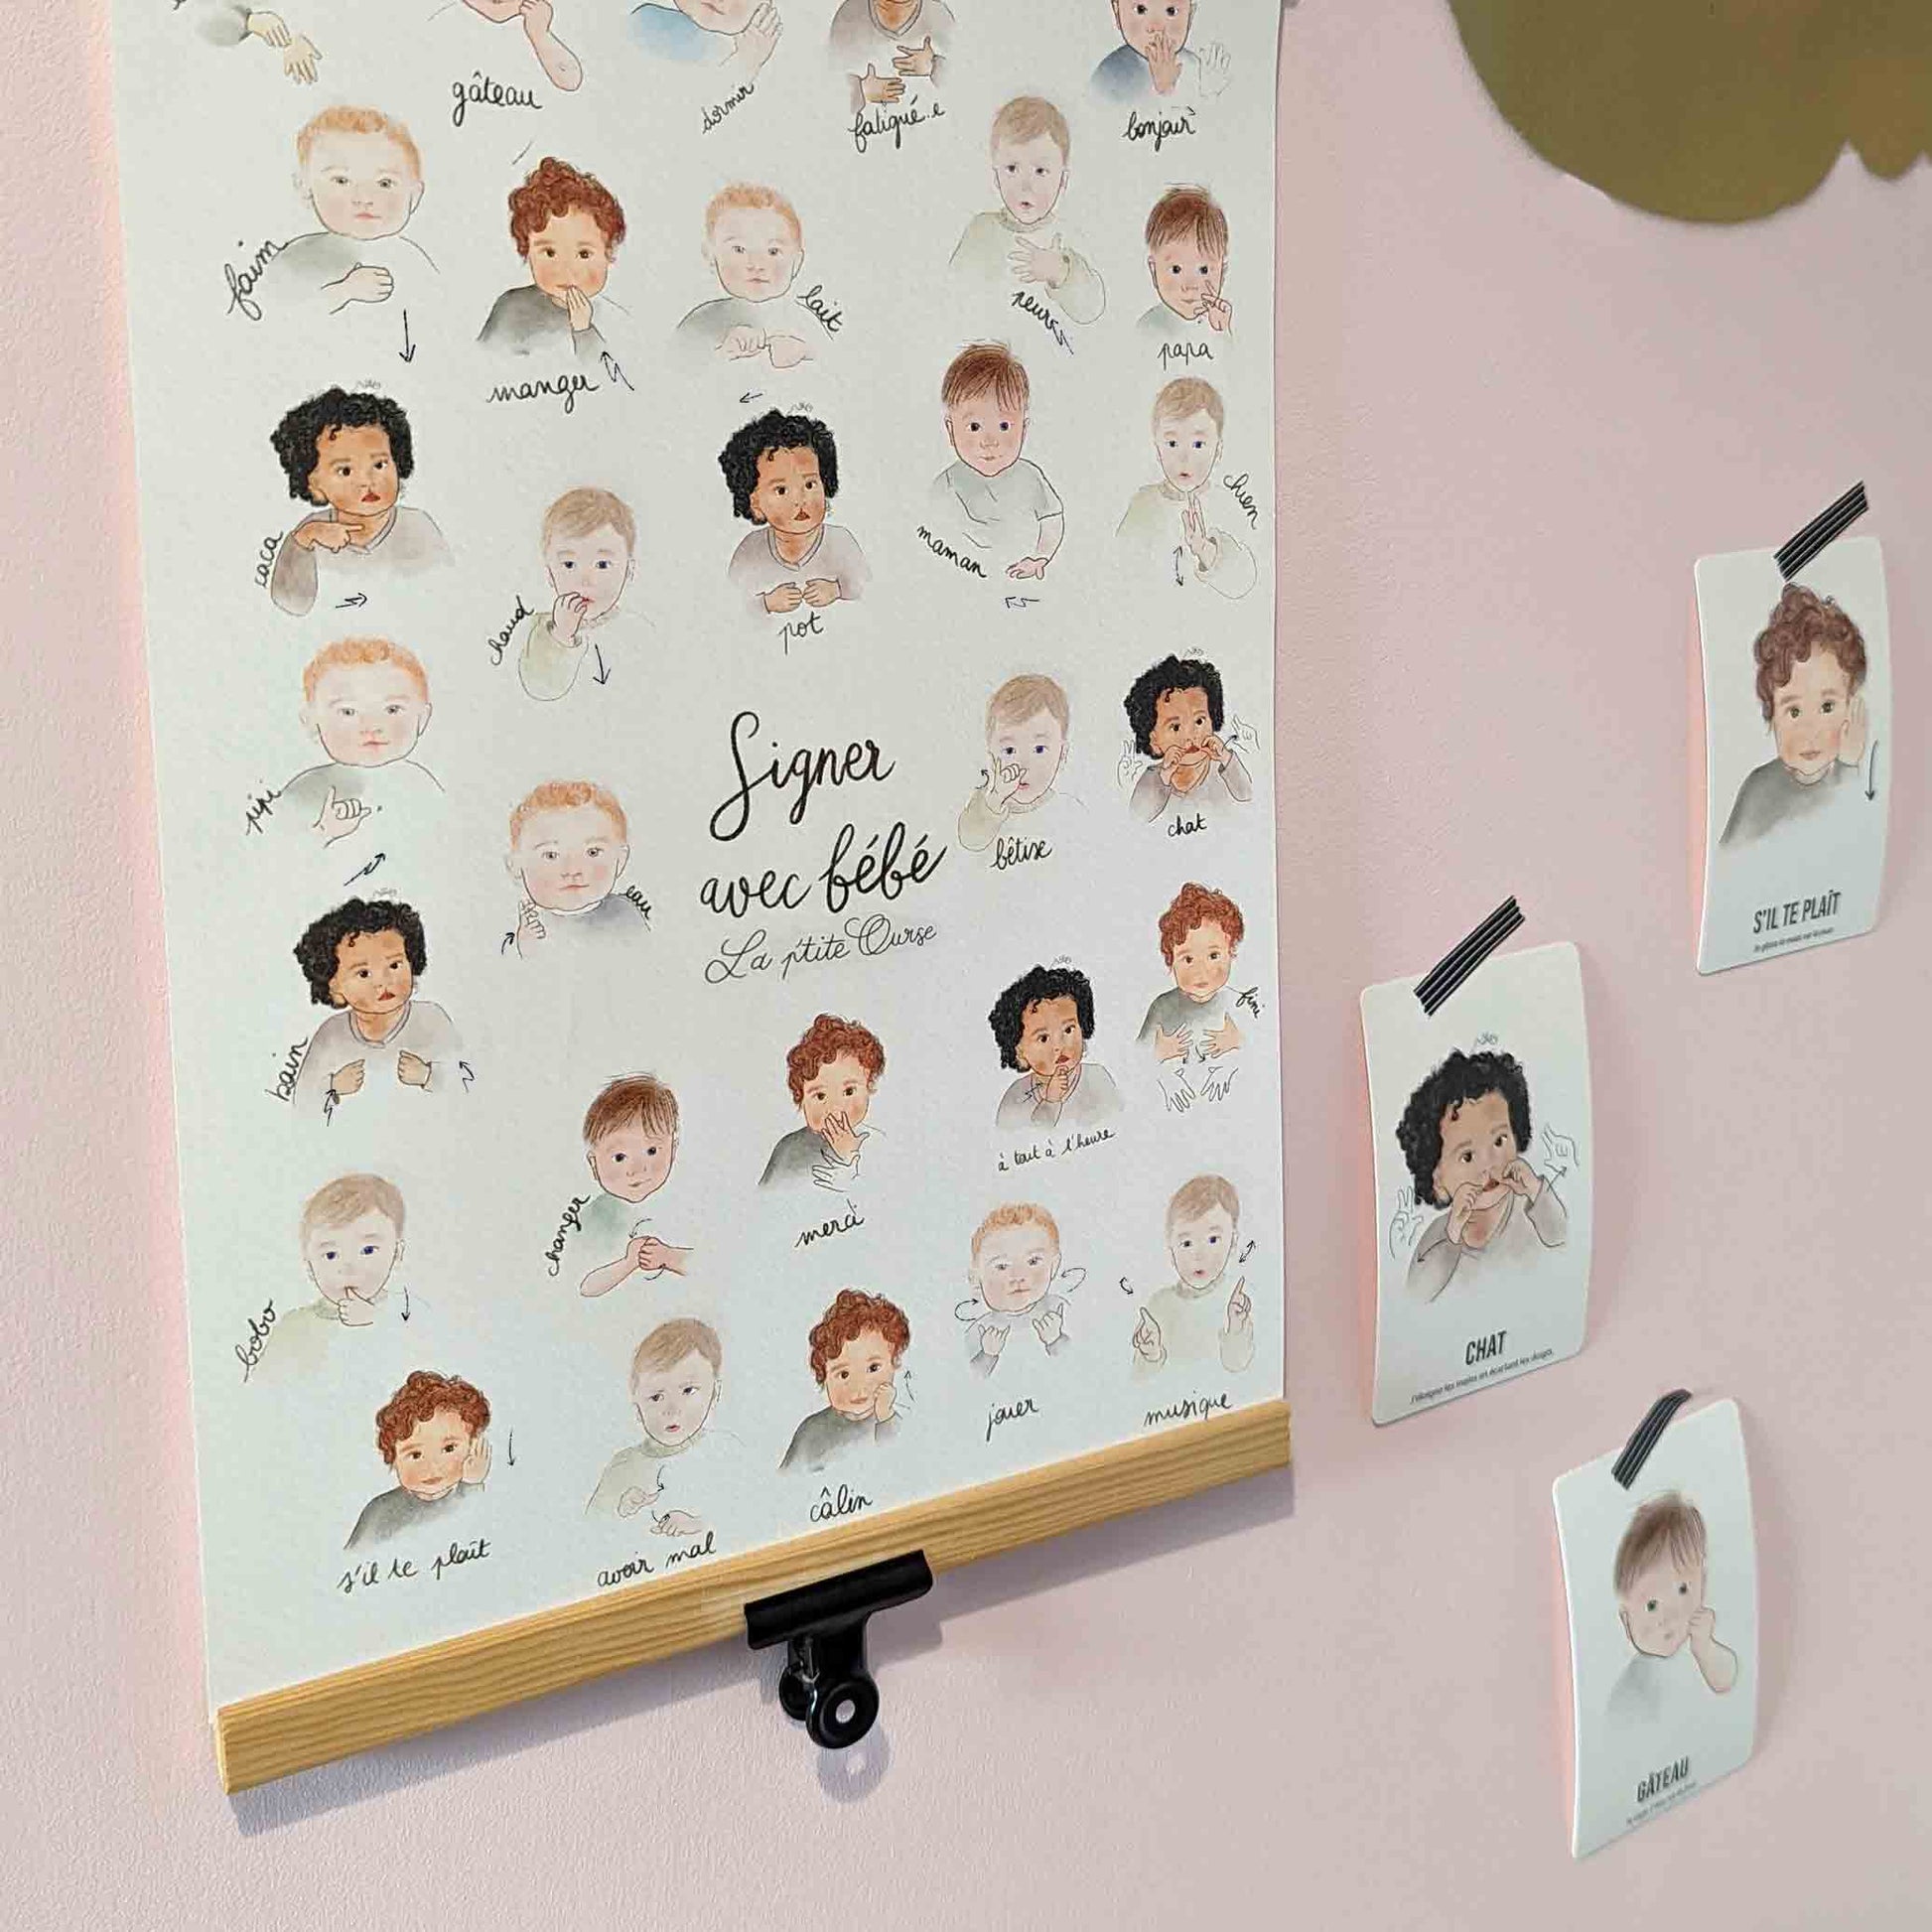 Affiche signer avec bébé installée dans la chambre d'enfant avec des cartes bébé signe accrochés au mur grâce à du masking tape noir et blanc